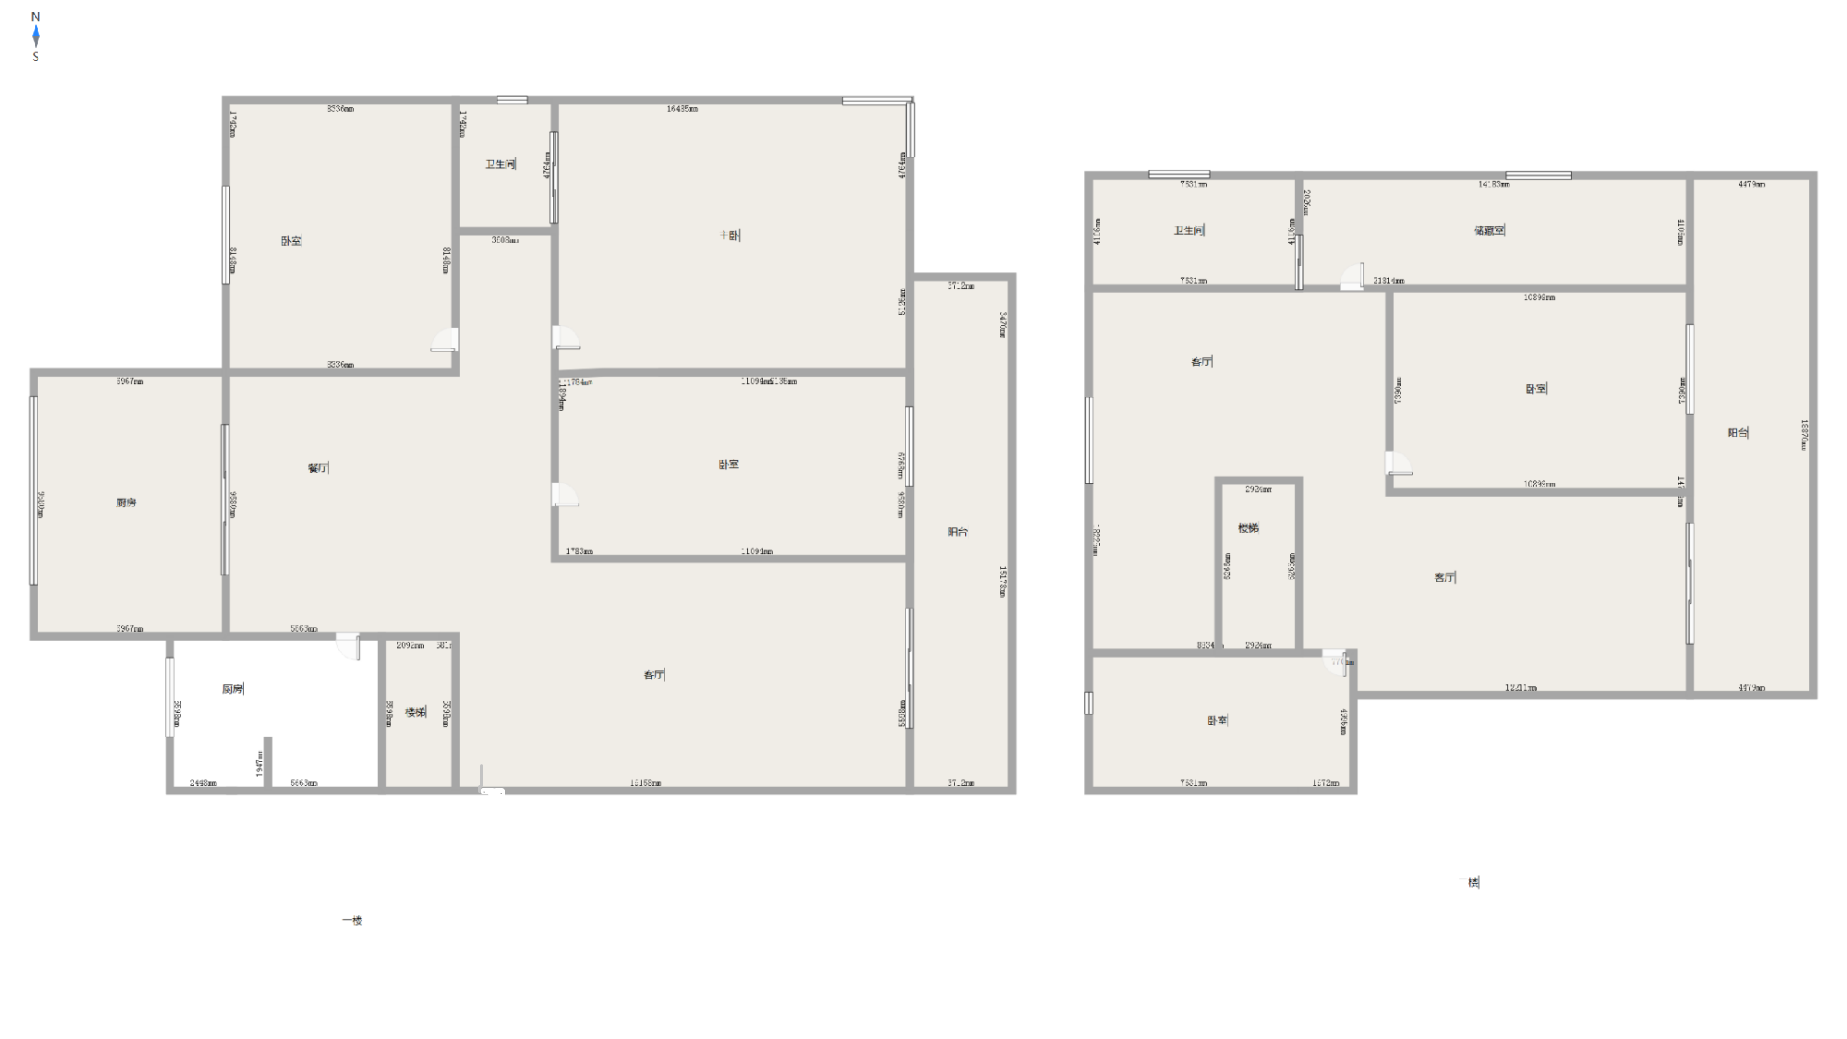 鱼郡,鱼郡复式 五室三厅三卫 送两个车位 实际面积比房本面积大14